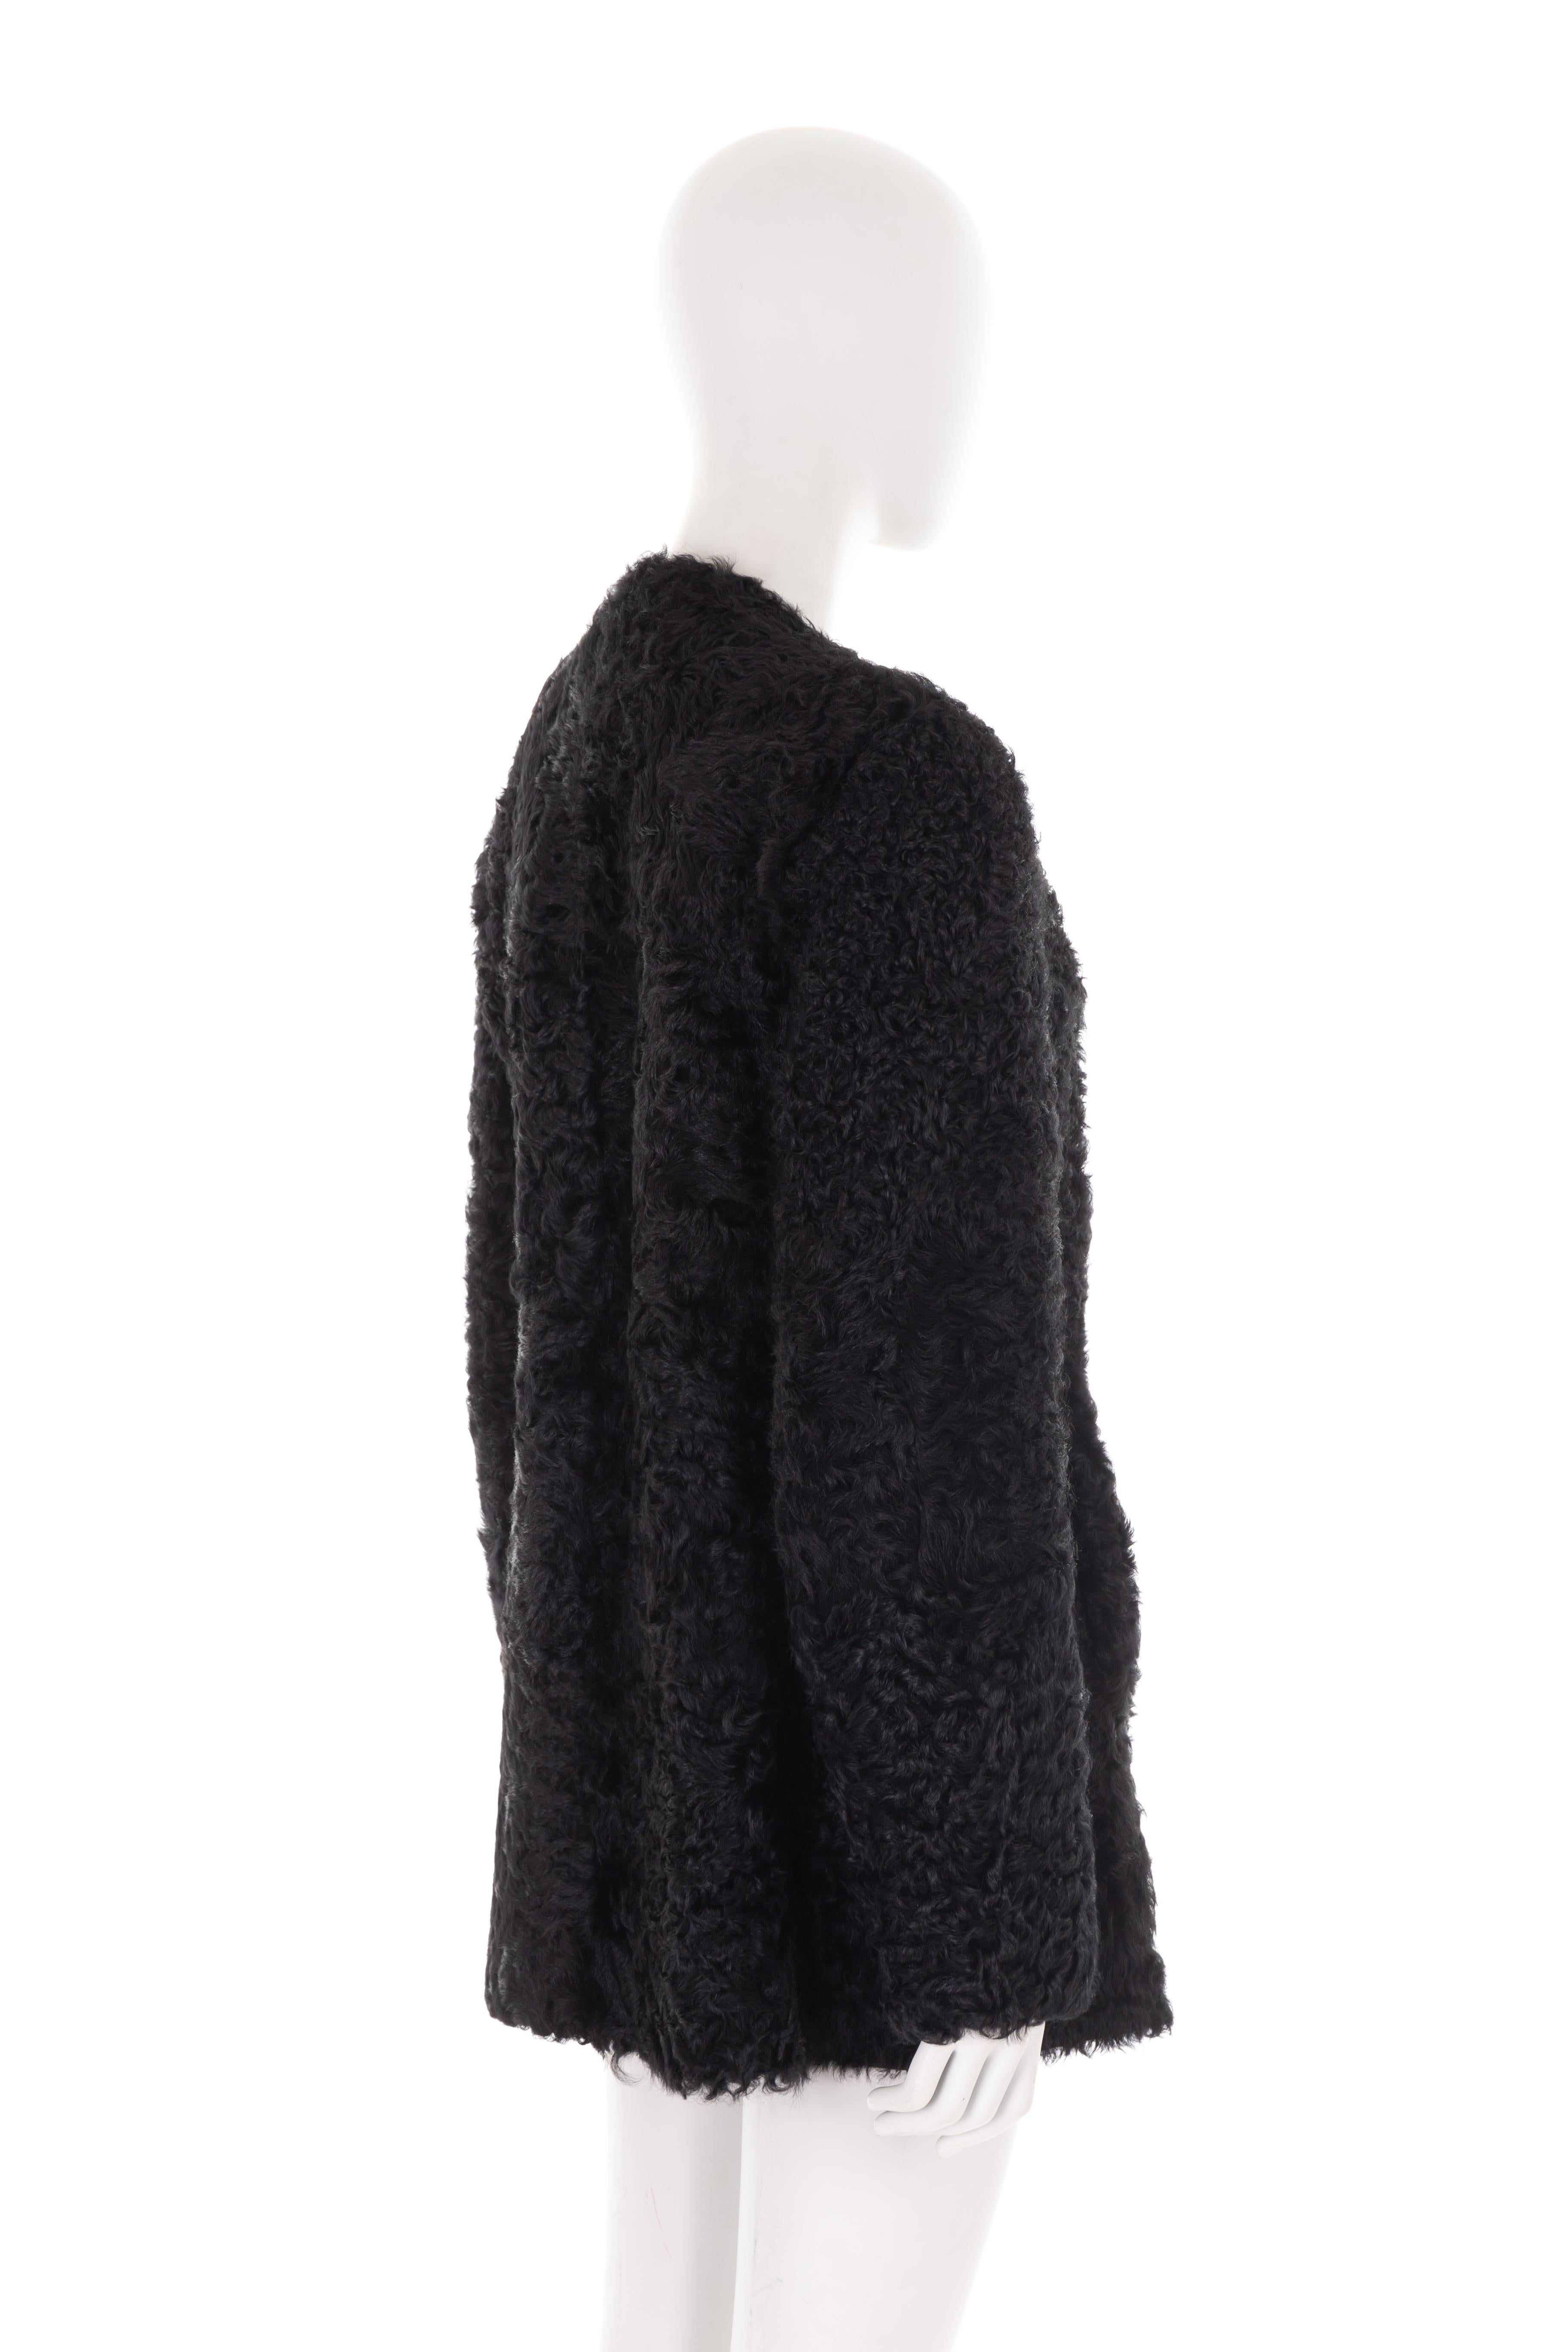 Women's Prada by Miuccia Prada F/W 2011 black curly Mongolian lamb fur coat For Sale